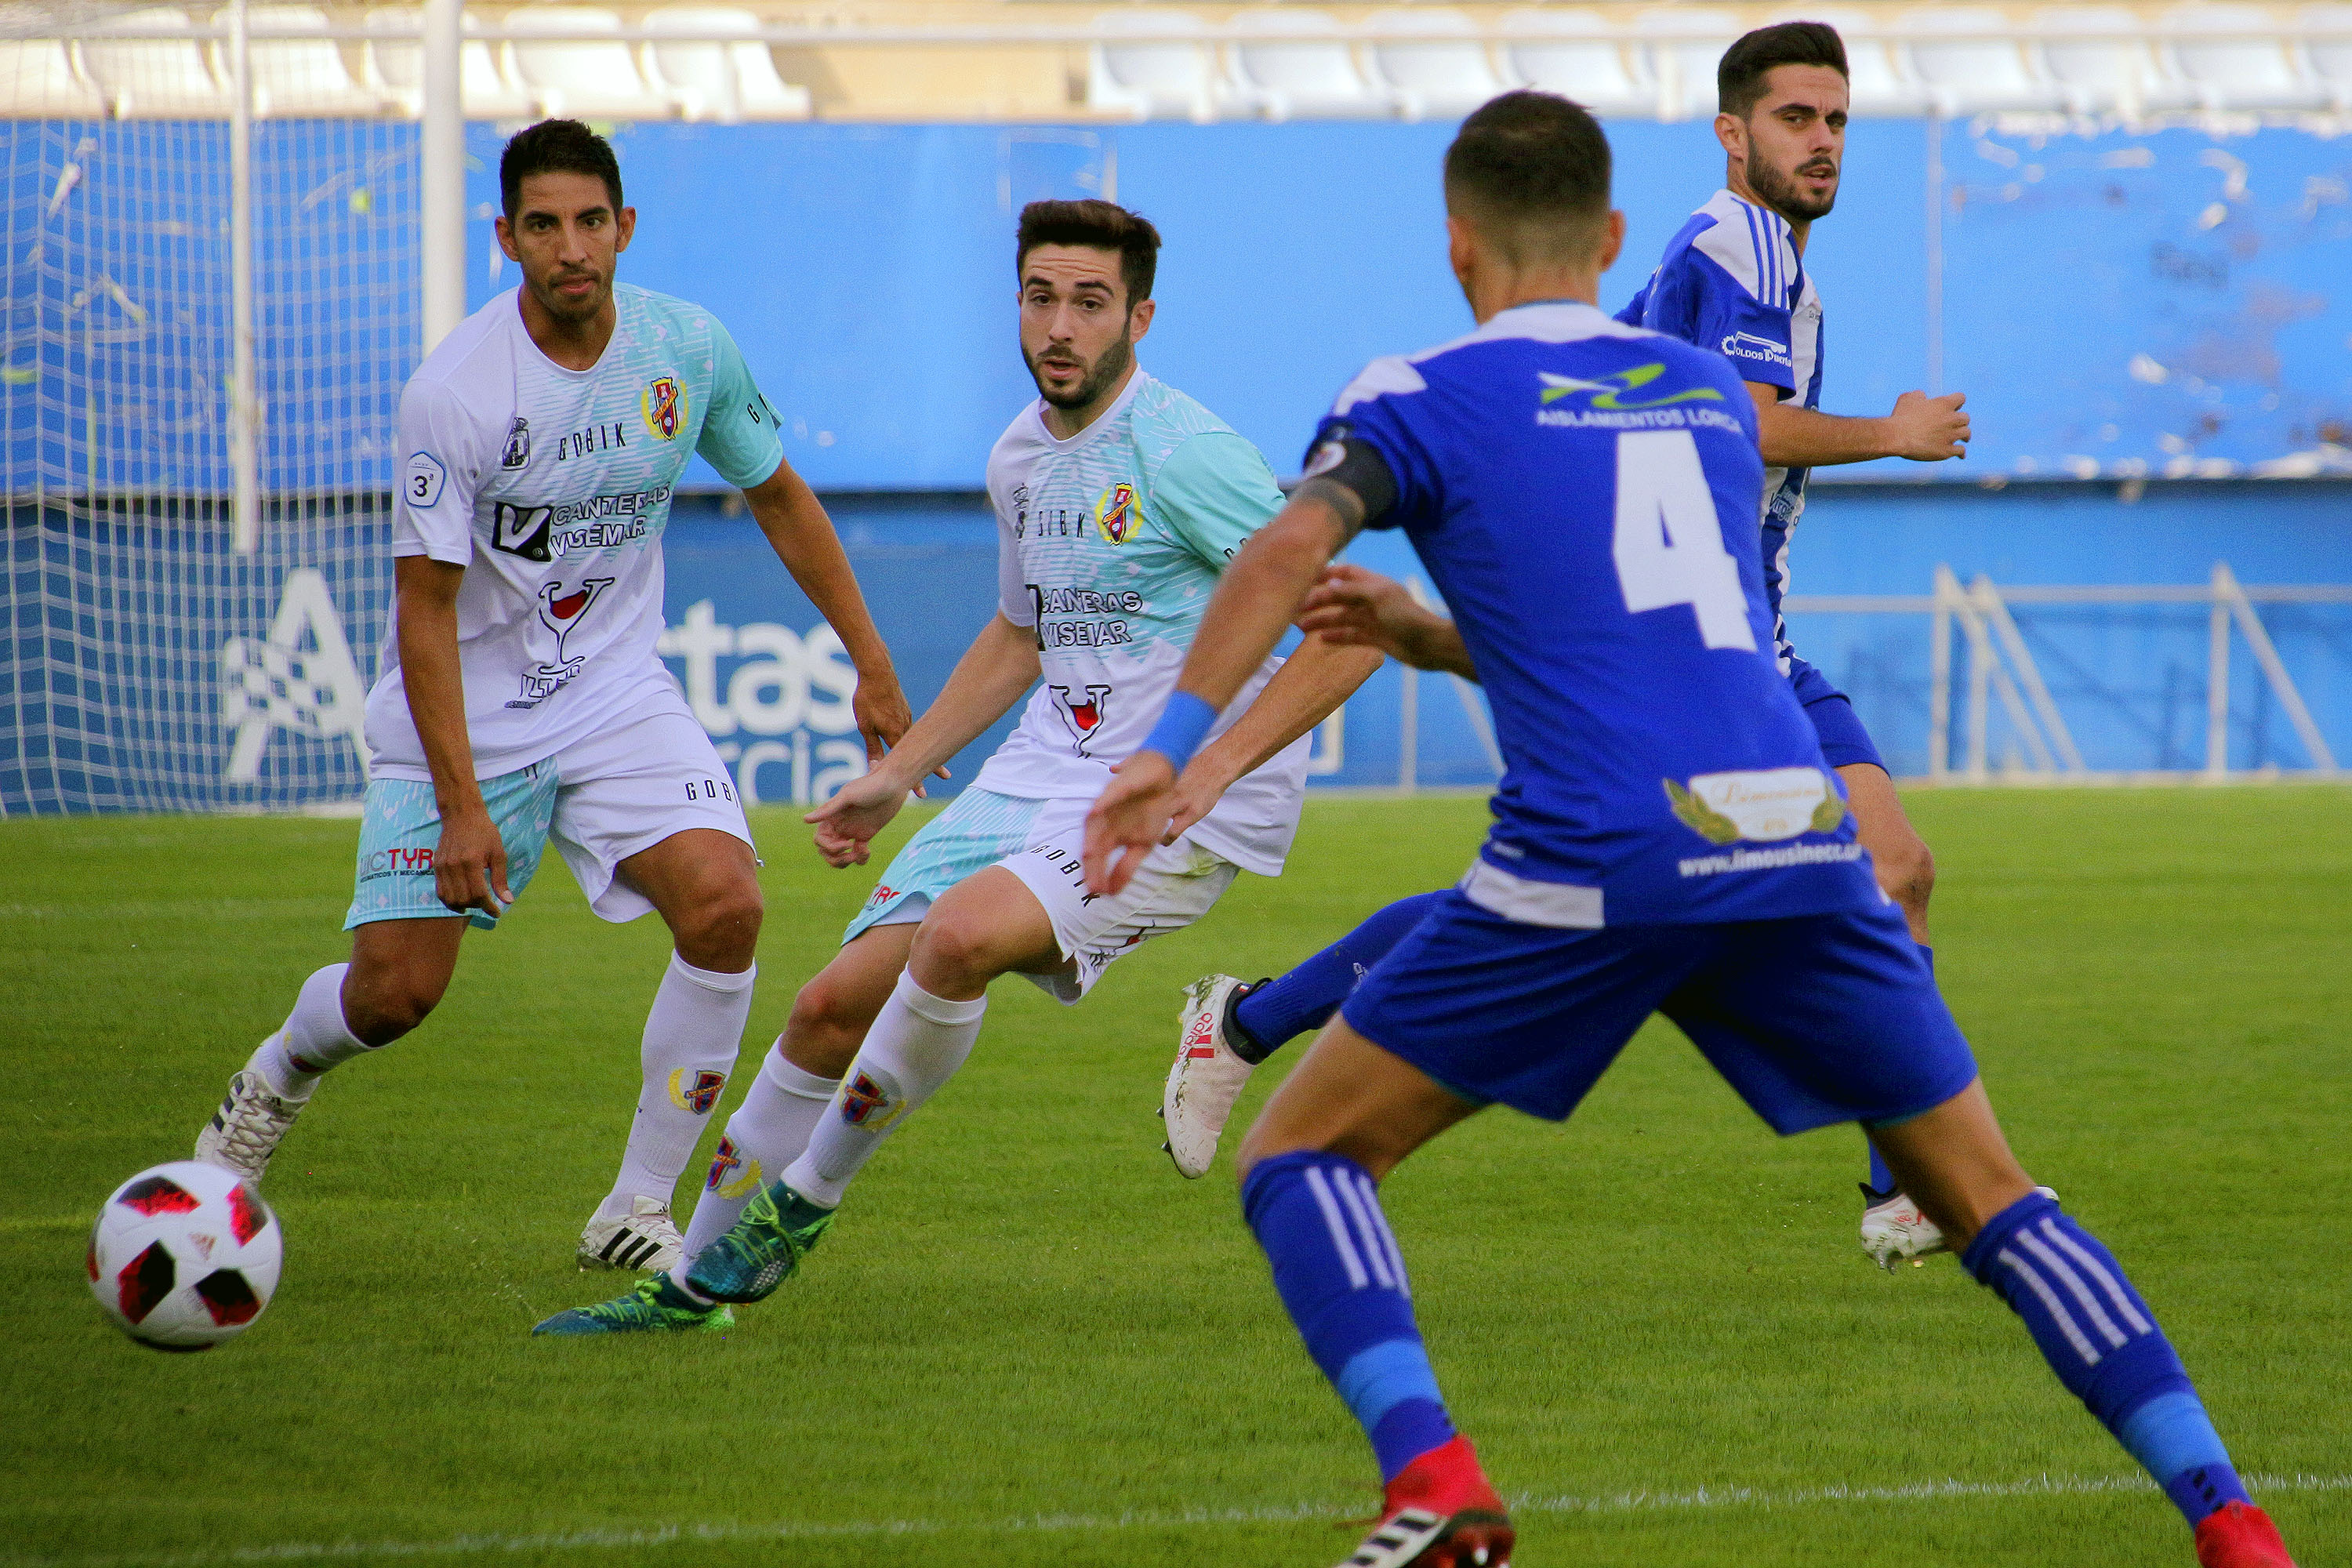 El Yeclano gana con autoridad al Lorca Deportiva en el Artés Carrasco